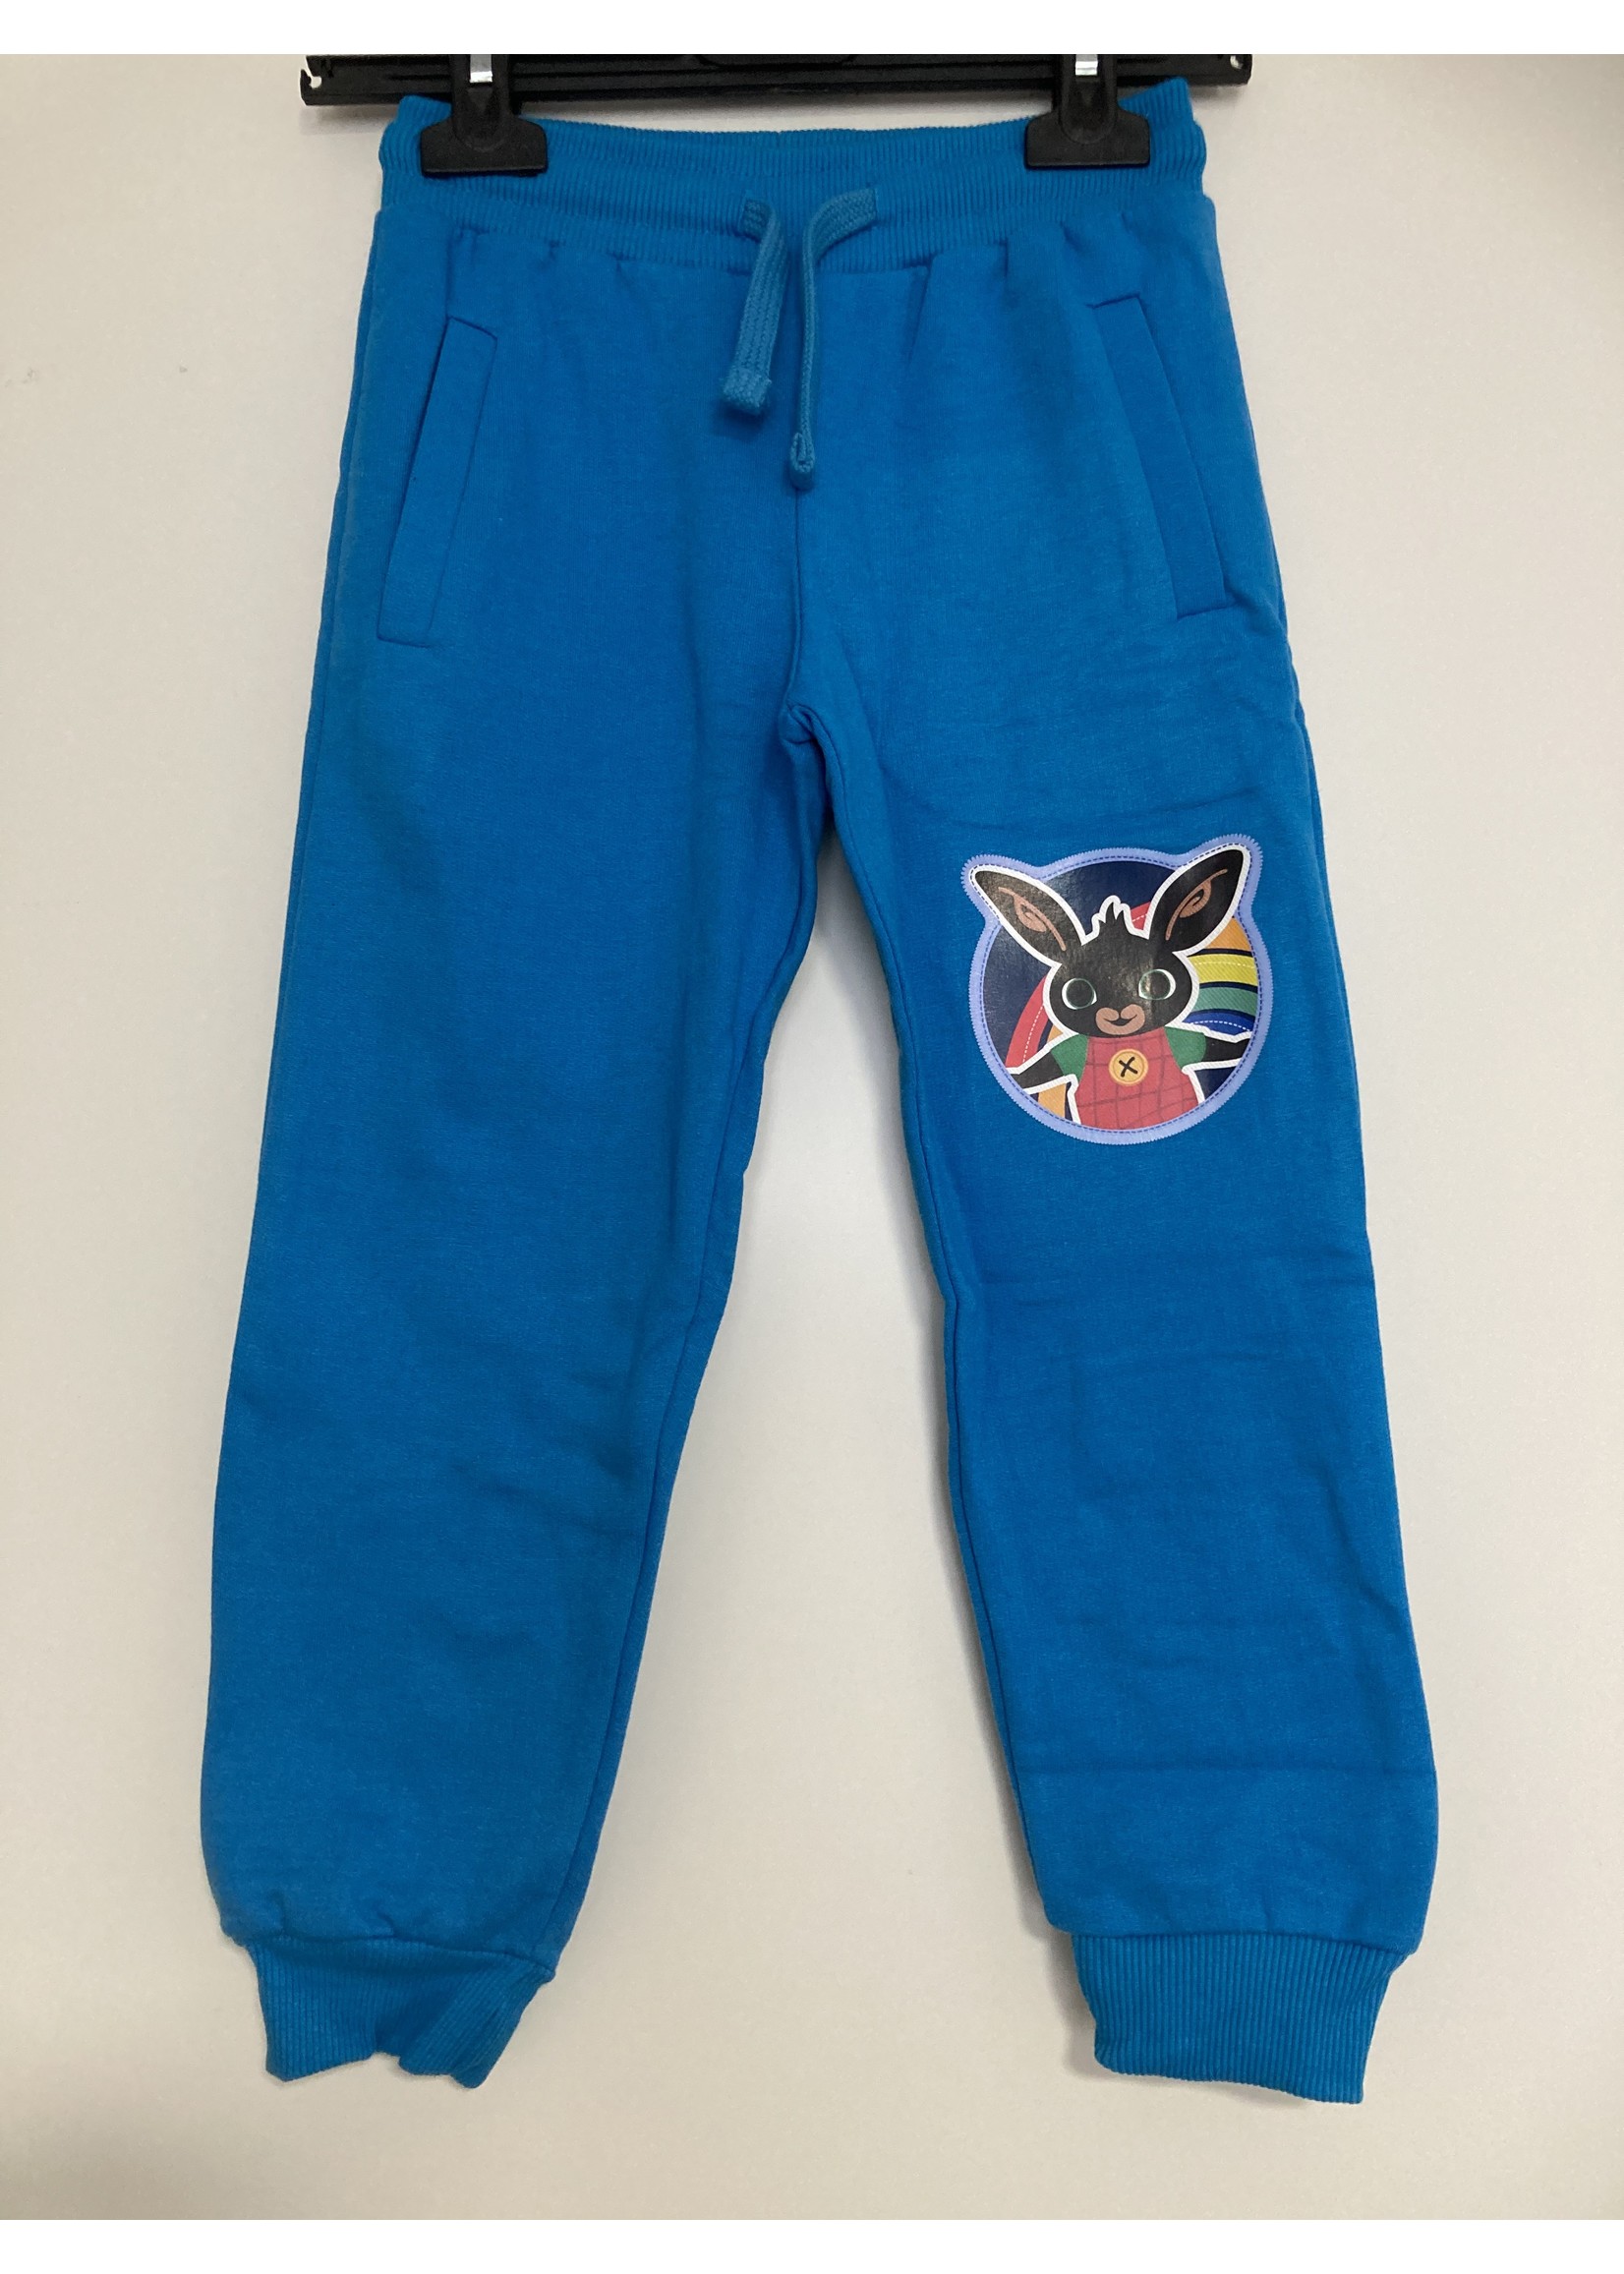 Bing Spodnie dresowe Bunny Bing firmy BING w kolorze niebieskim